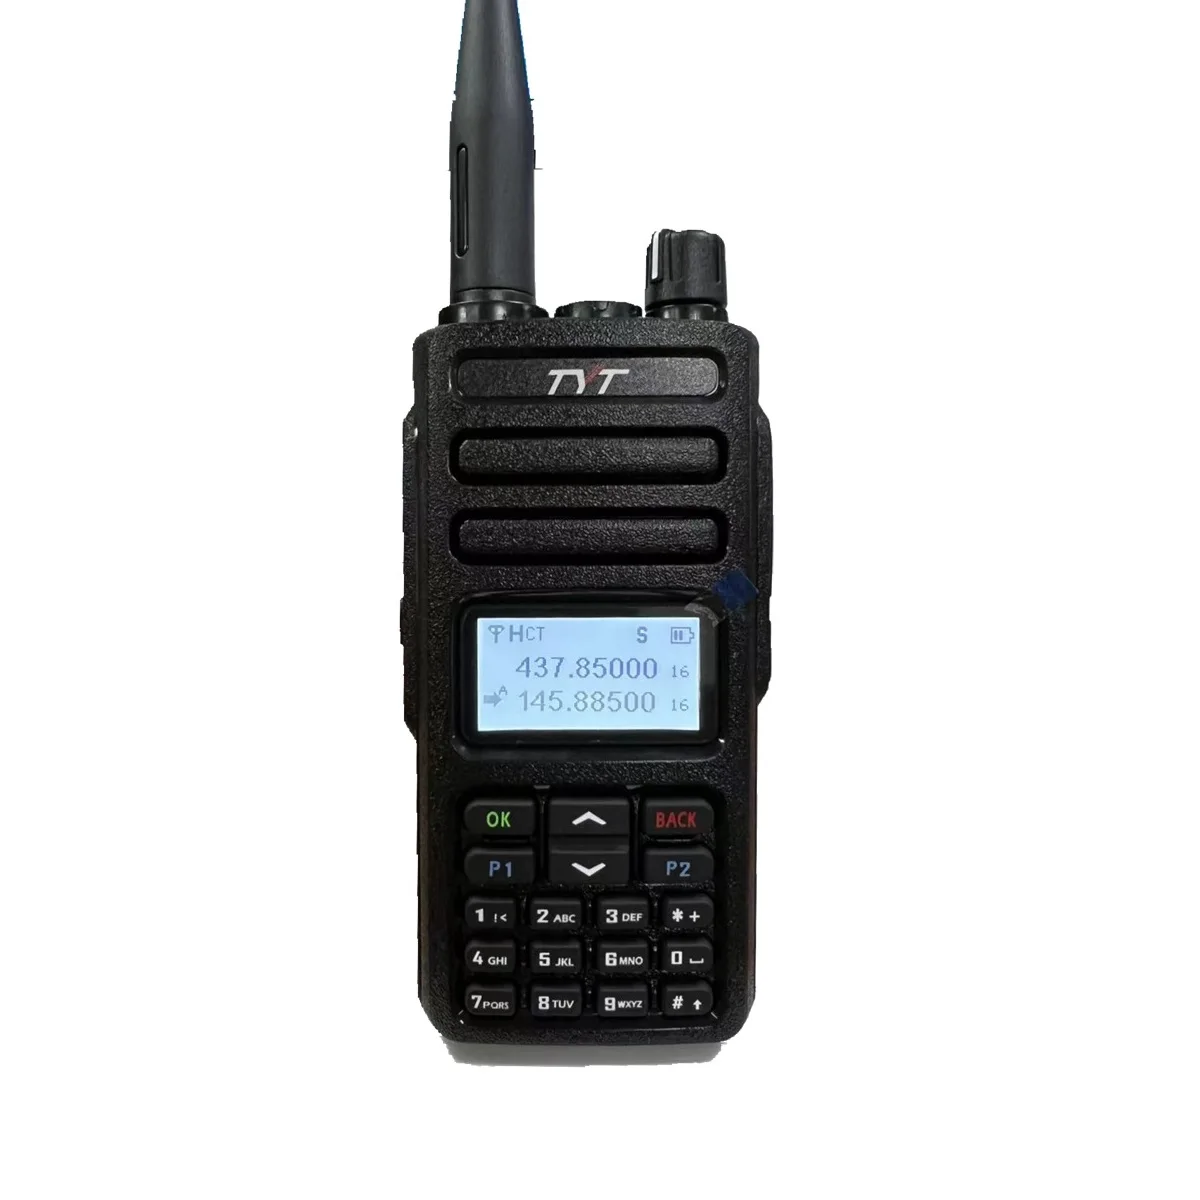 TYT MD750 Двусторонняя радиосвязь DMR и аналоговые двухдиапазонные QT DQT Scrambler Шифрование Экранная клавиатура 5 Вт Двойной временной интервал HAM Интерфон - 2